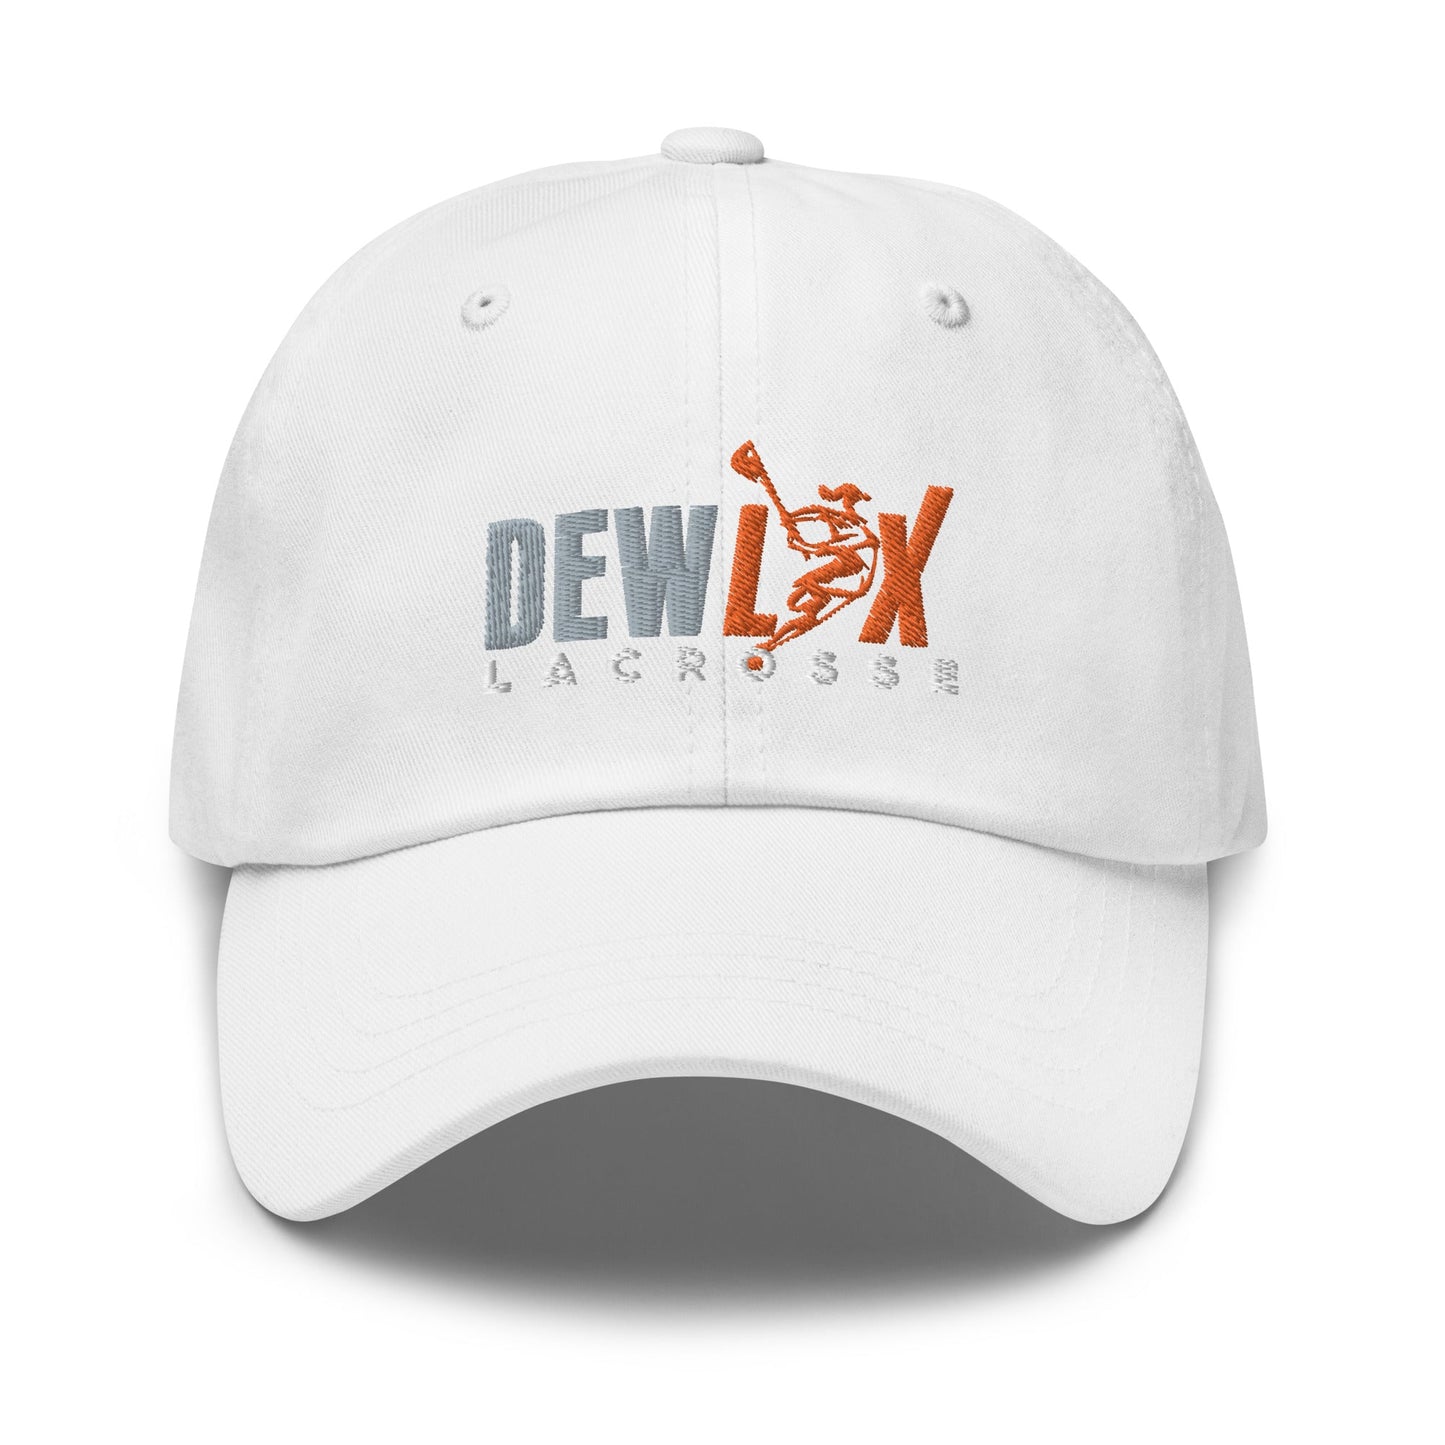 DEWLAX LC Dad Hat Signature Lacrosse